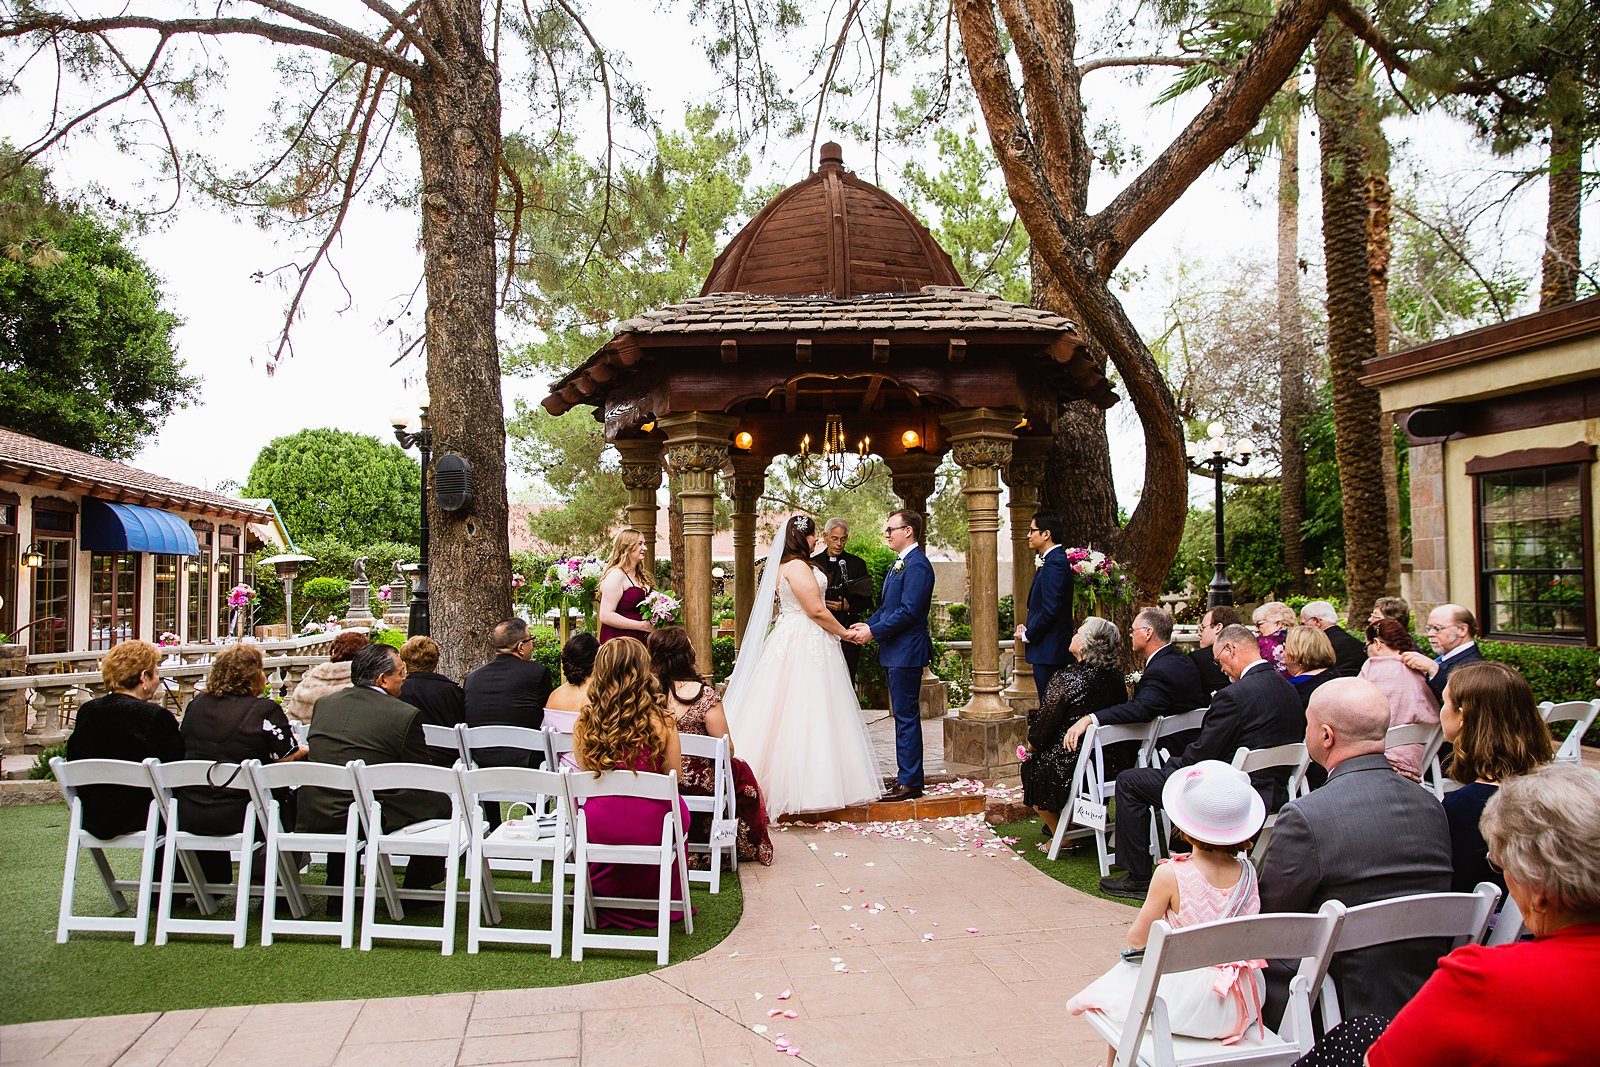 Wedding ceremony at The Wright House Provencal by Arizona wedding photographer PMA Photography.